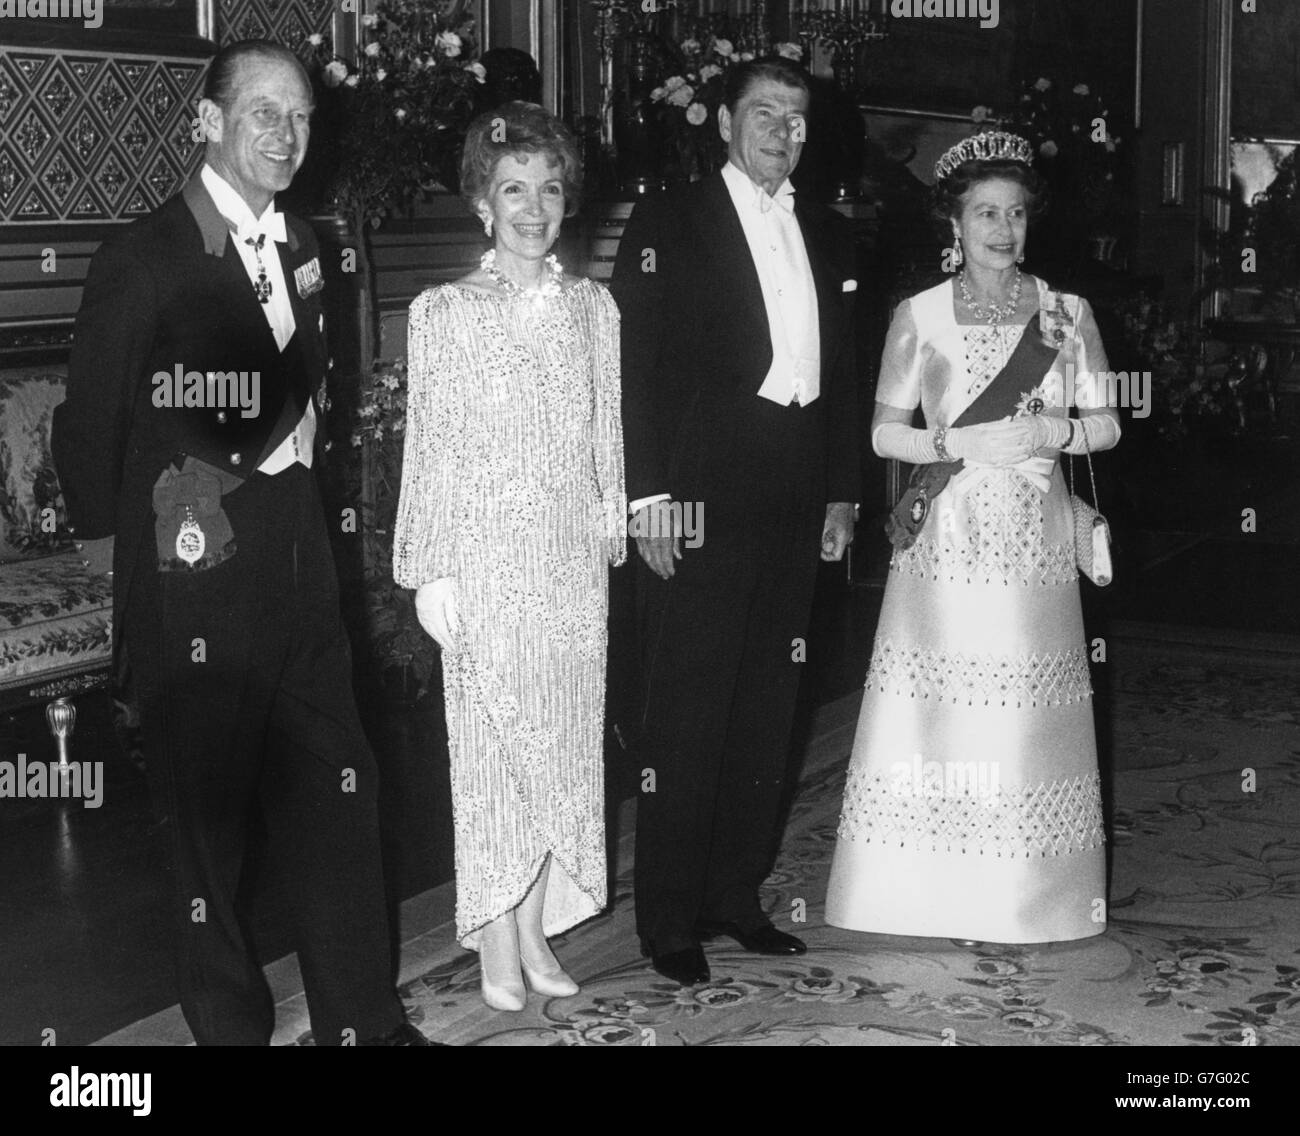 (l-r) le duc d'Édimbourg, Nancy Reagan, le président Ronald Reagan et la reine Elizabeth II, photographiés avant d'assister à un banquet au château de Windsor. Banque D'Images